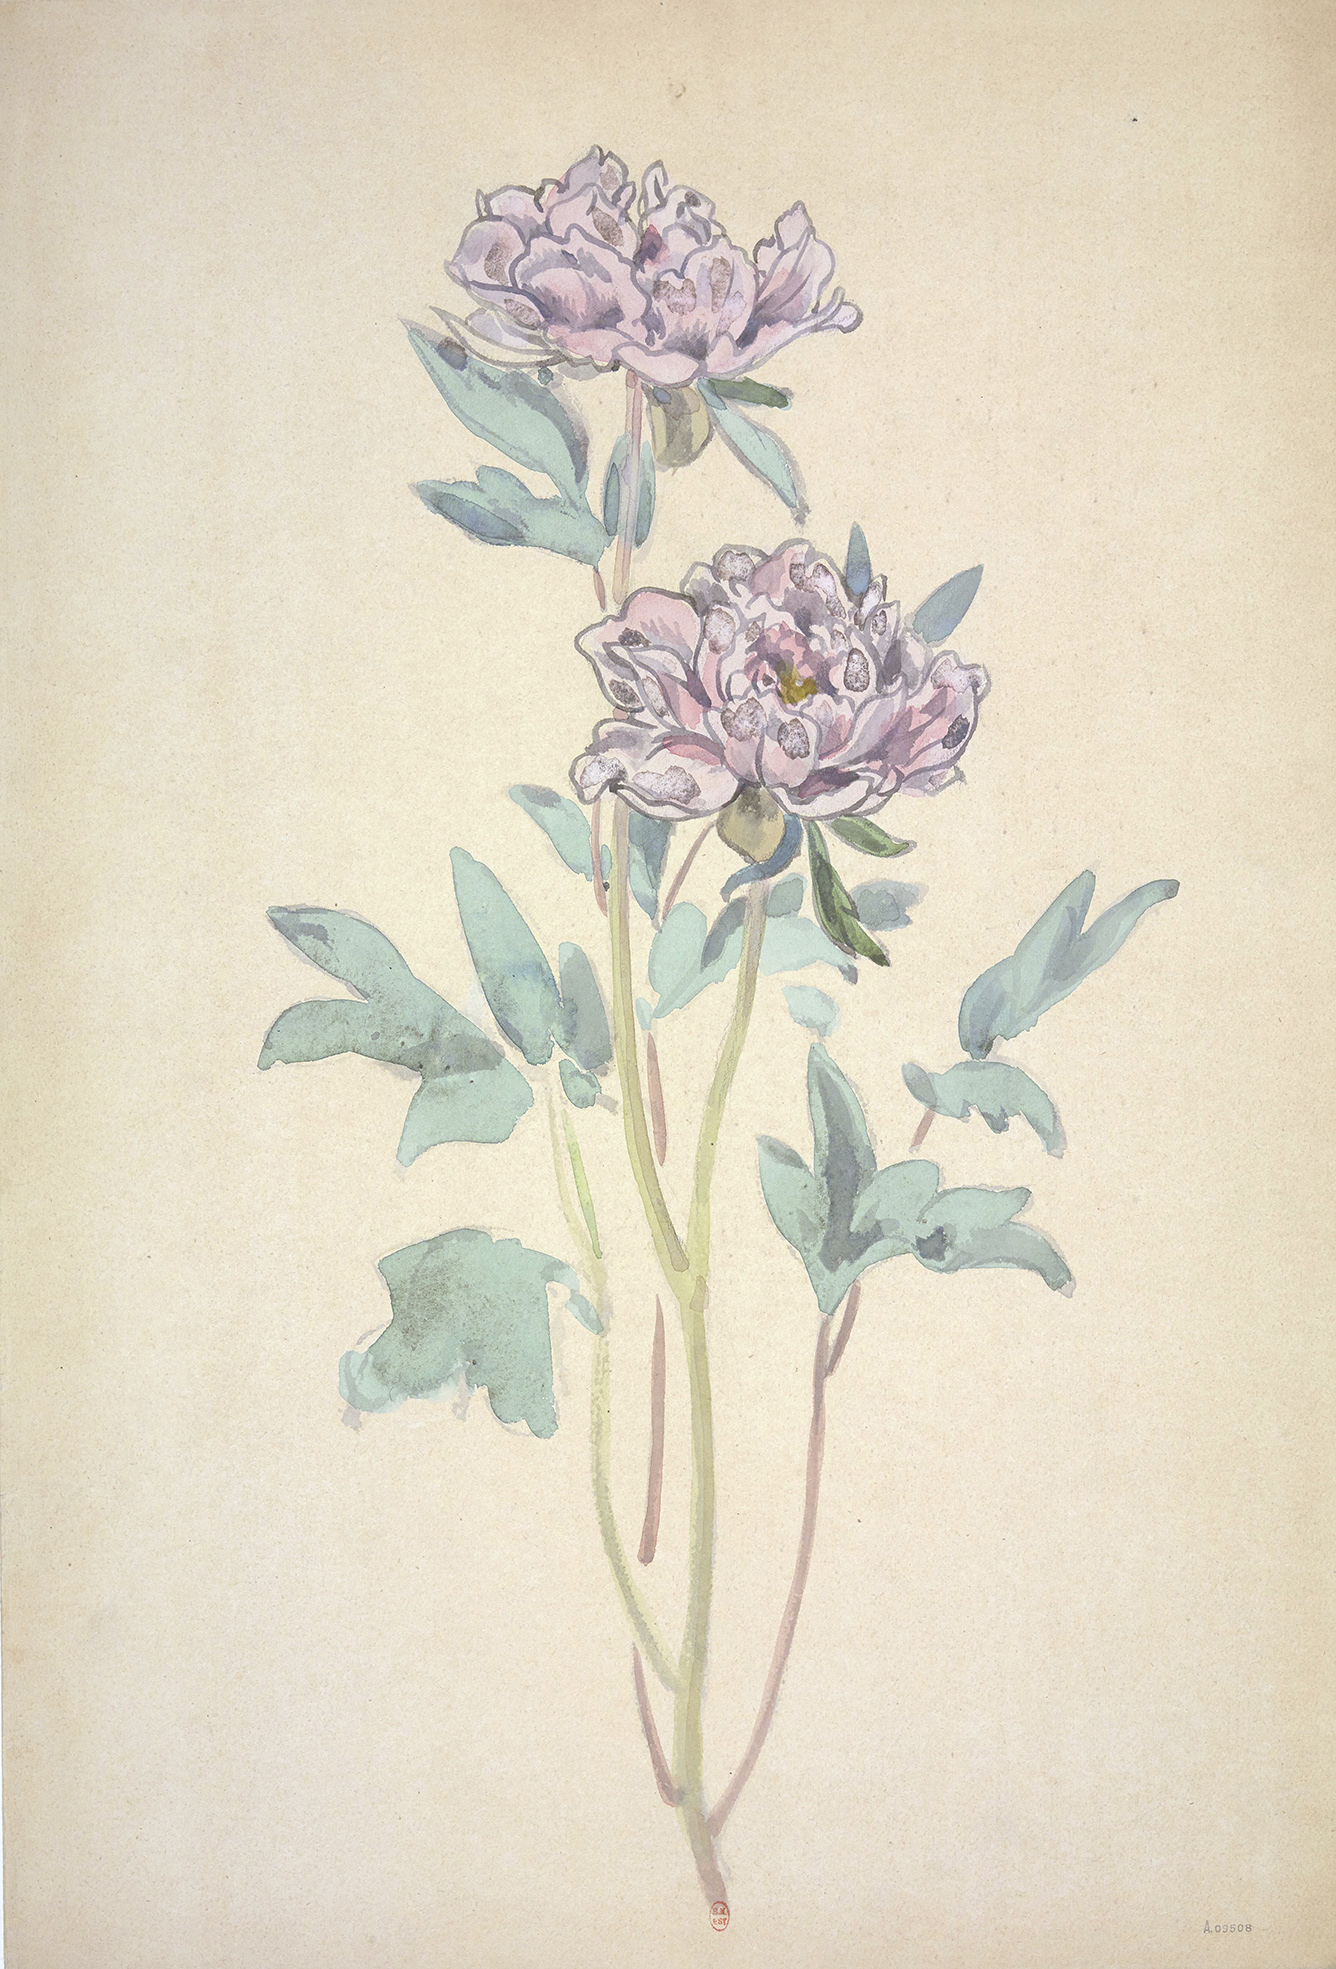 dessin aquarelle de fleurs de pivoines roses, violet